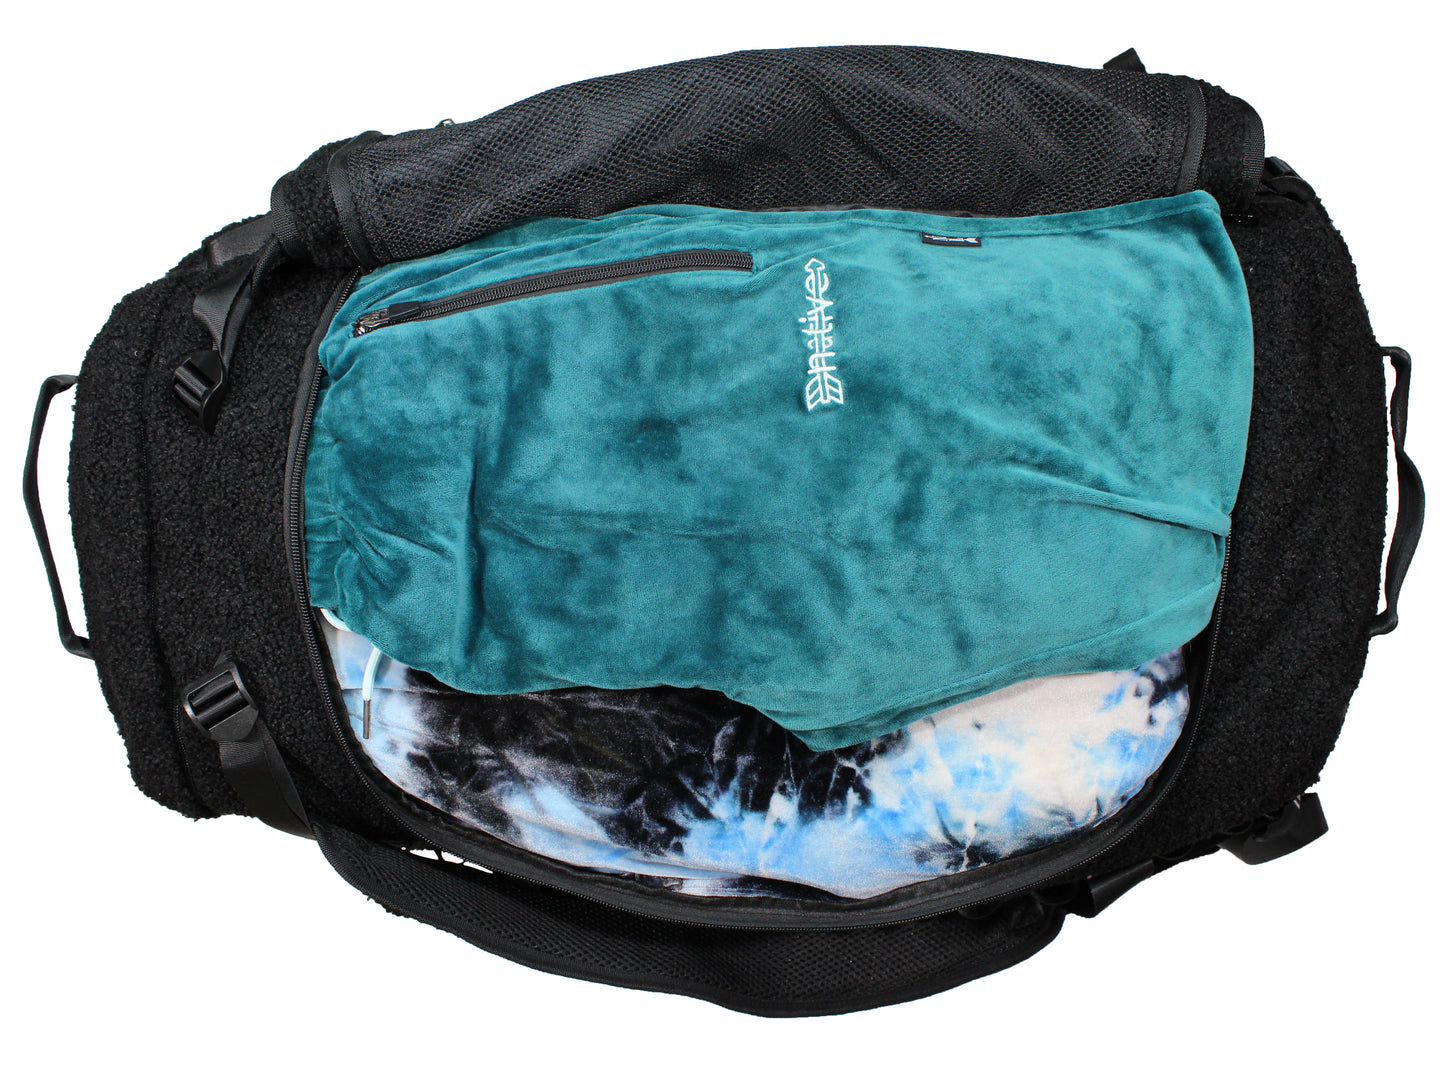 sherpa duffle backpack in black